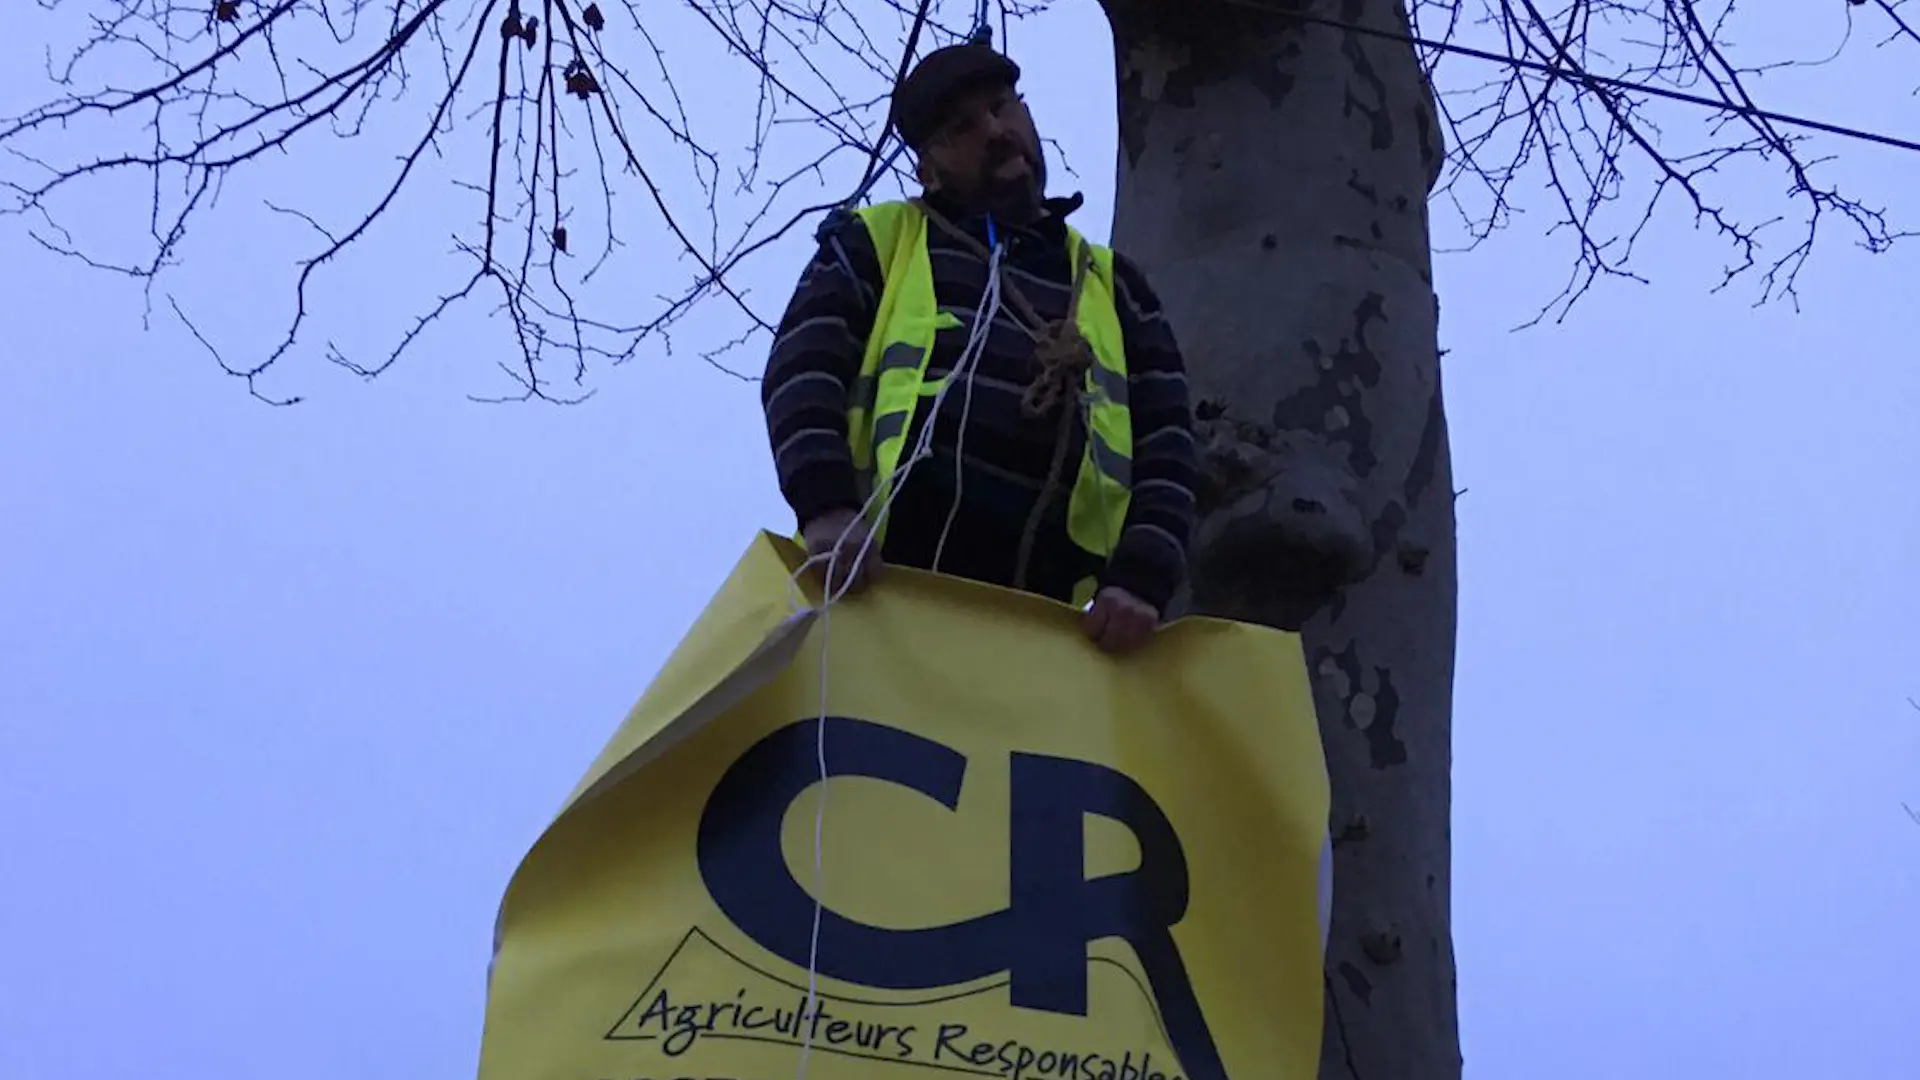 Vidéo : des agriculteurs “se pendent” aux arbres devant leur préfecture